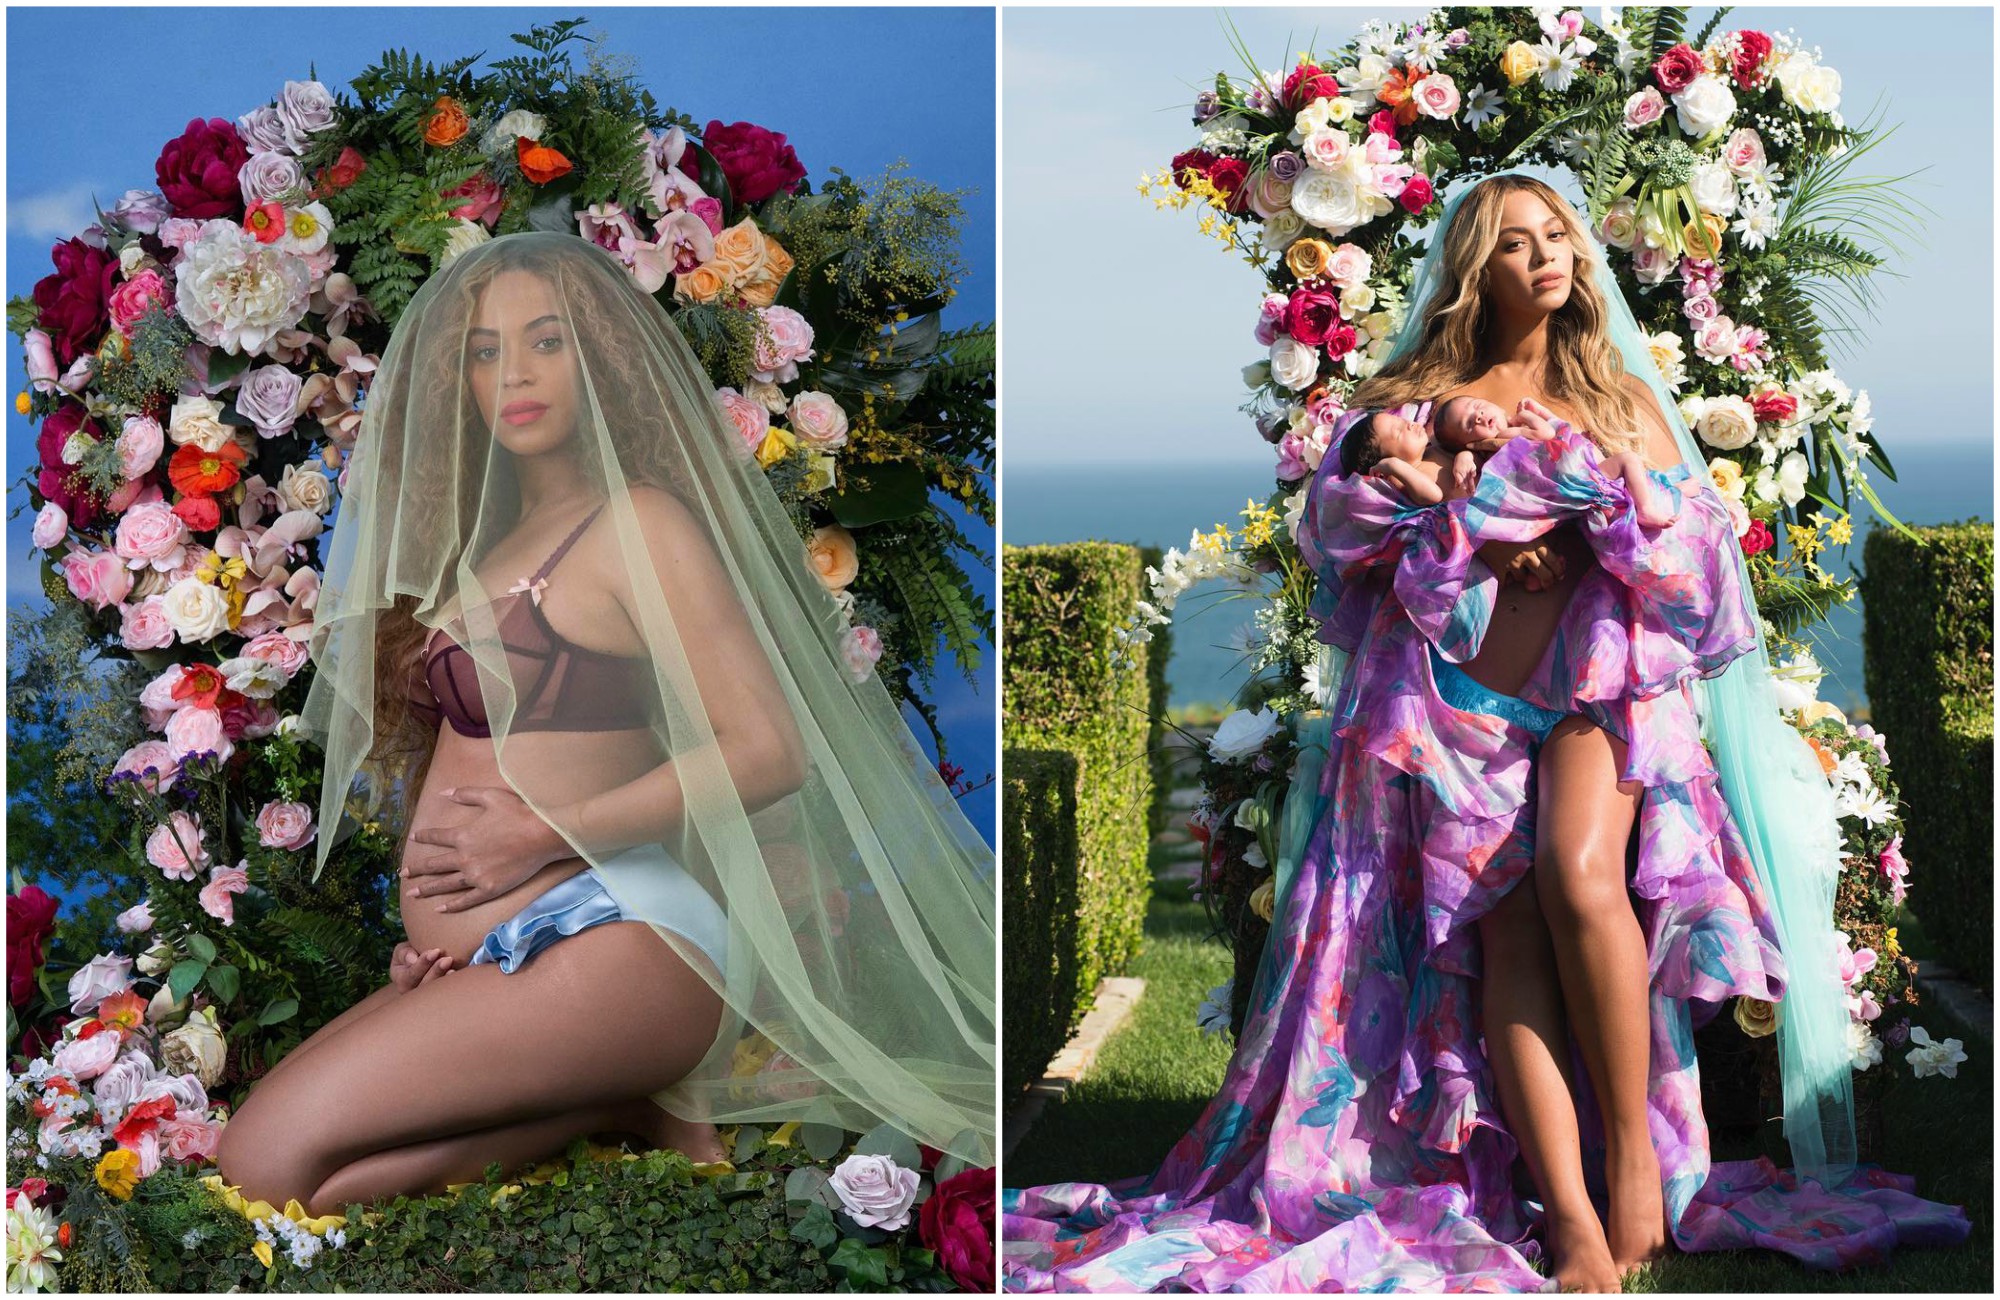 Beyoncé confirmou a chegada de seus filhos gêmeos com Jay-Z em grande estilo, com uma foto estilizada nas redes sociais. Os bebés Rumi e Sir, que nasceram em junho, renderam quase 10 milhões de gostos no Instagram da cantora. Foto via Instagram Beyoncé